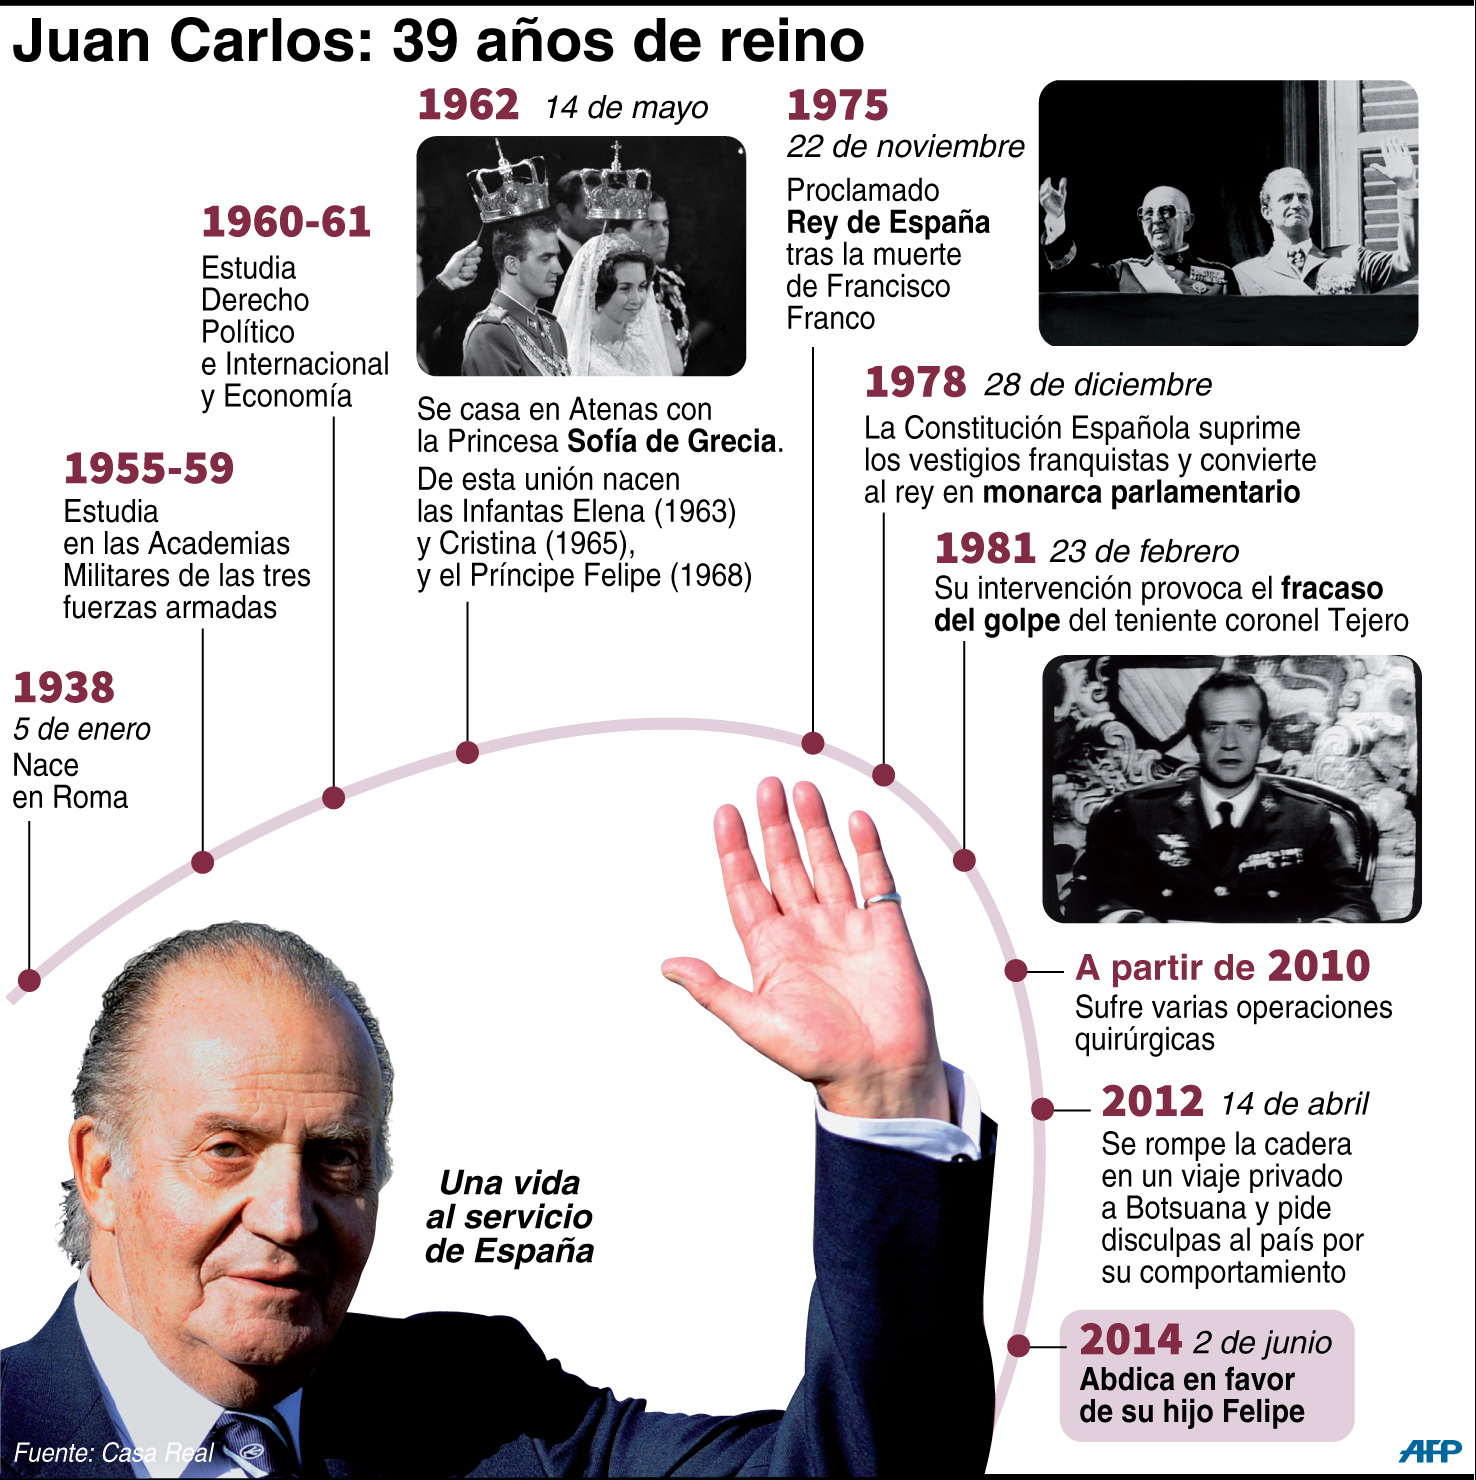 La vida del rey Juan Carlos (Cronología)